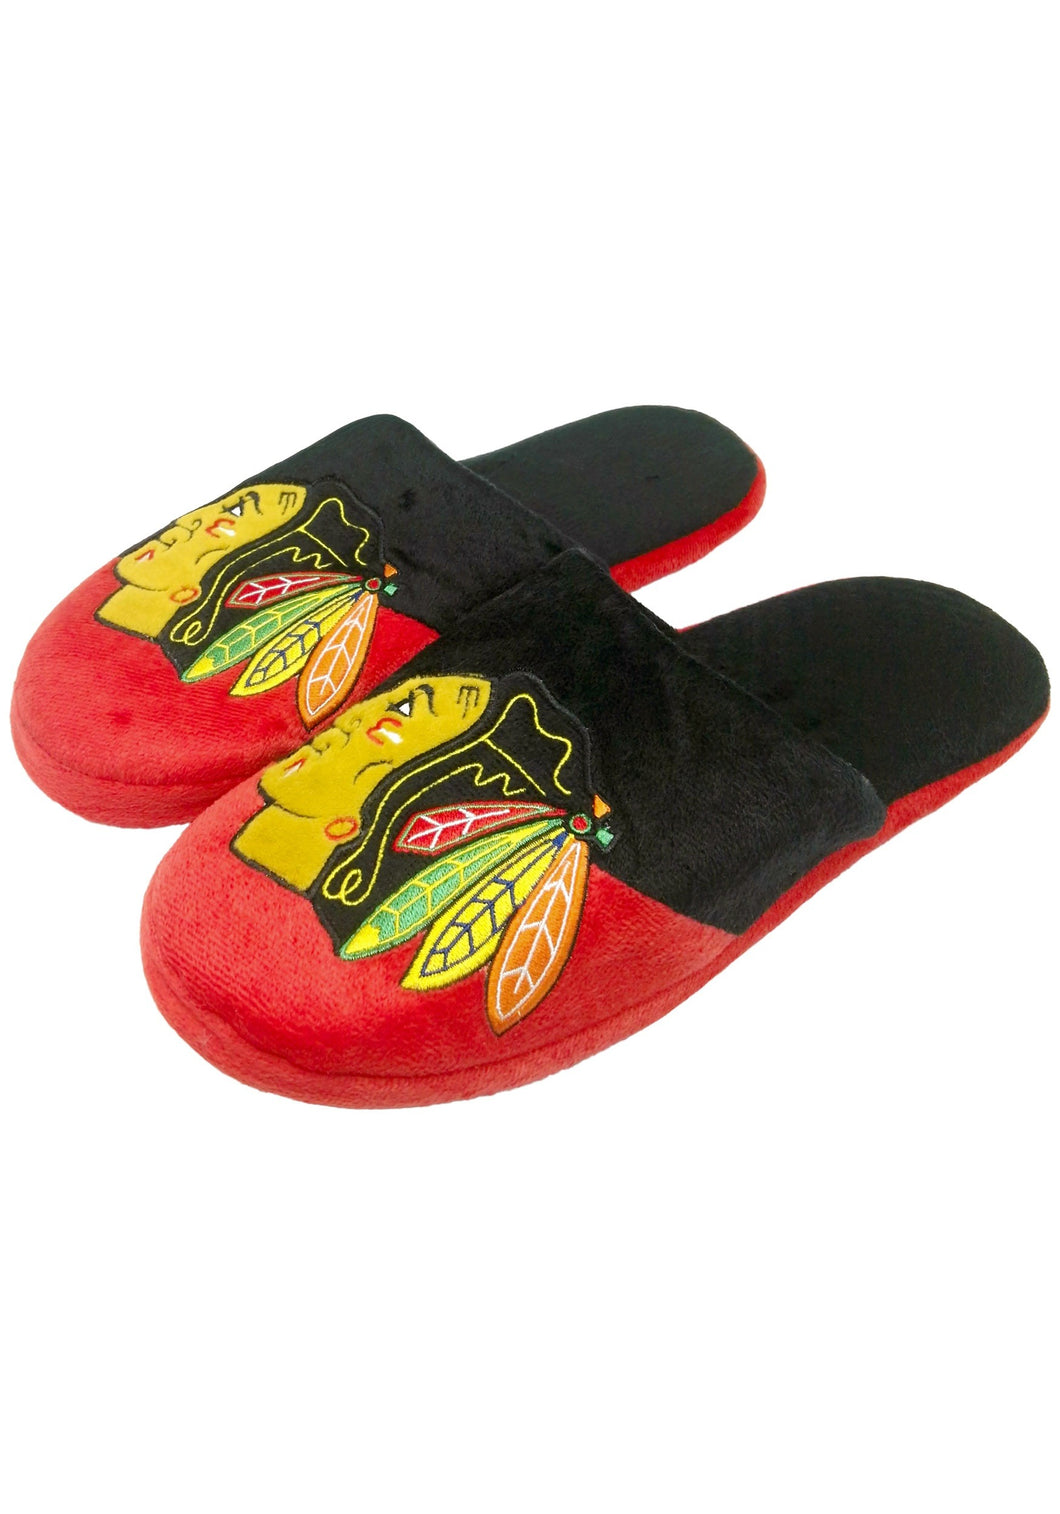 Chicago Blackhawks NHL Colorblock Slide Slippers